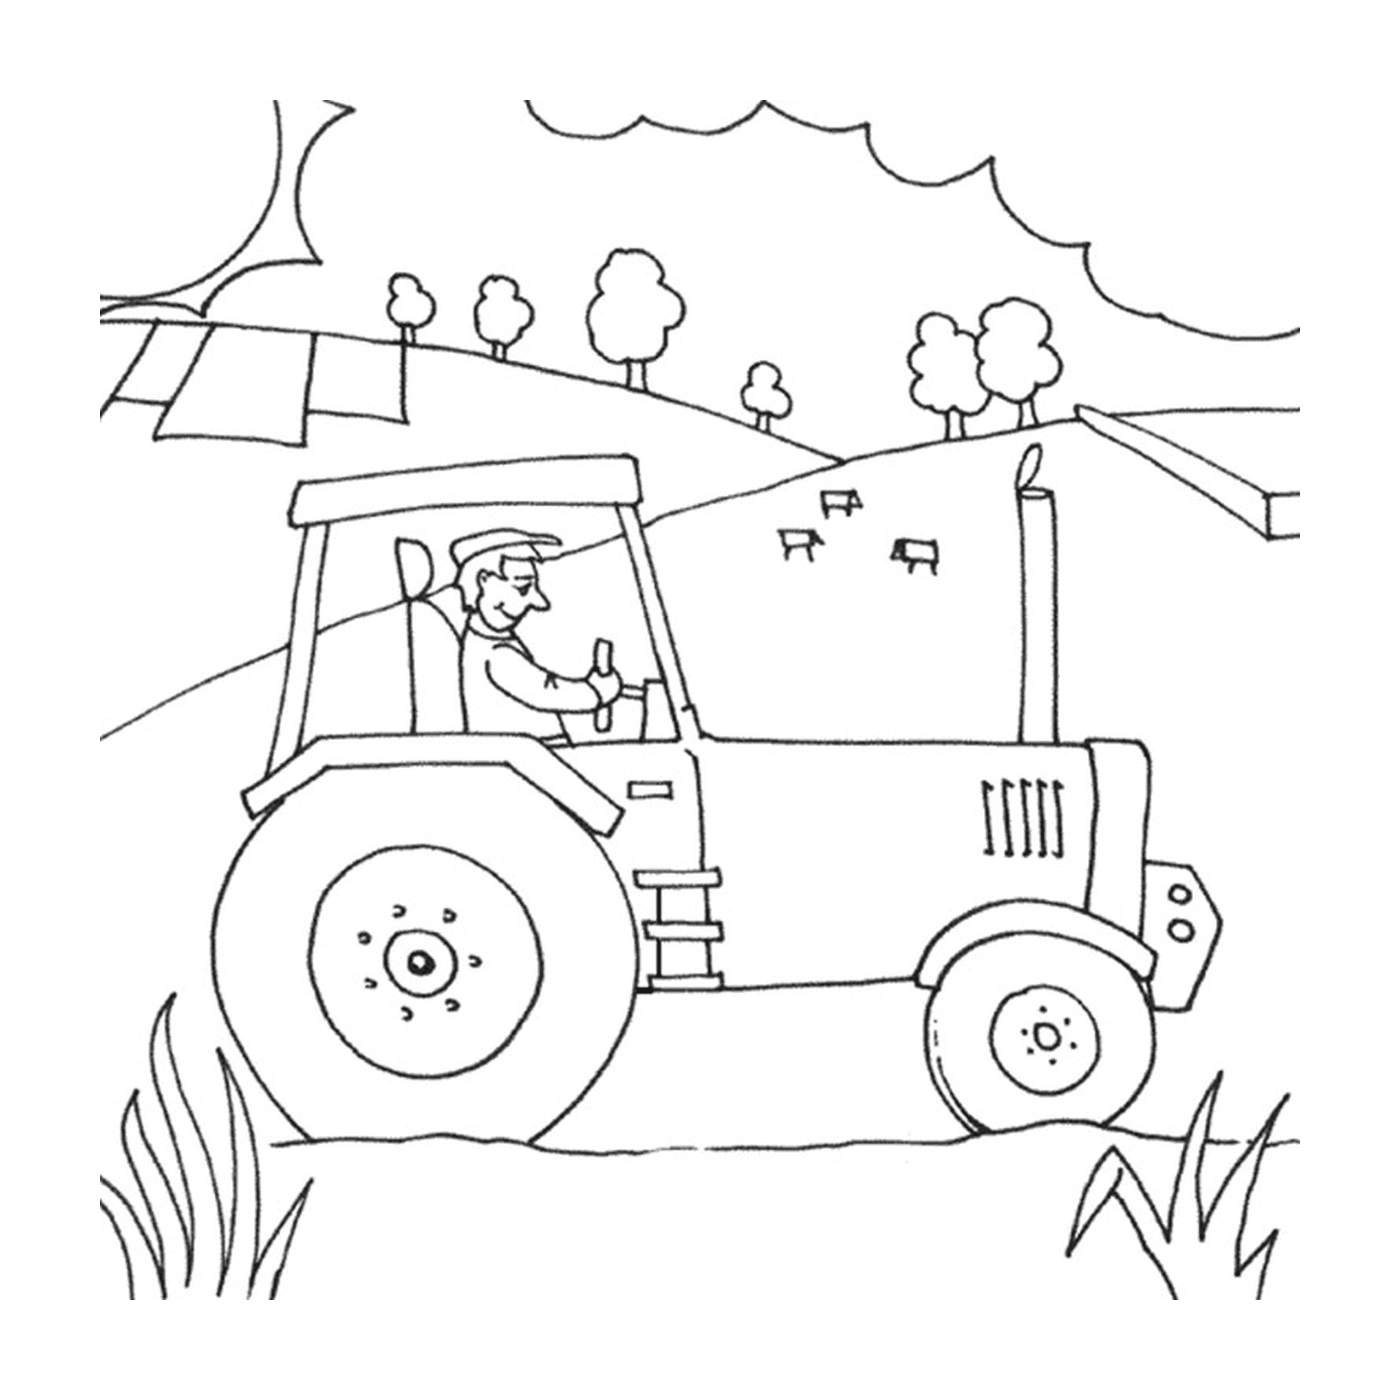  Fazenda com trator, vida rural ativa 